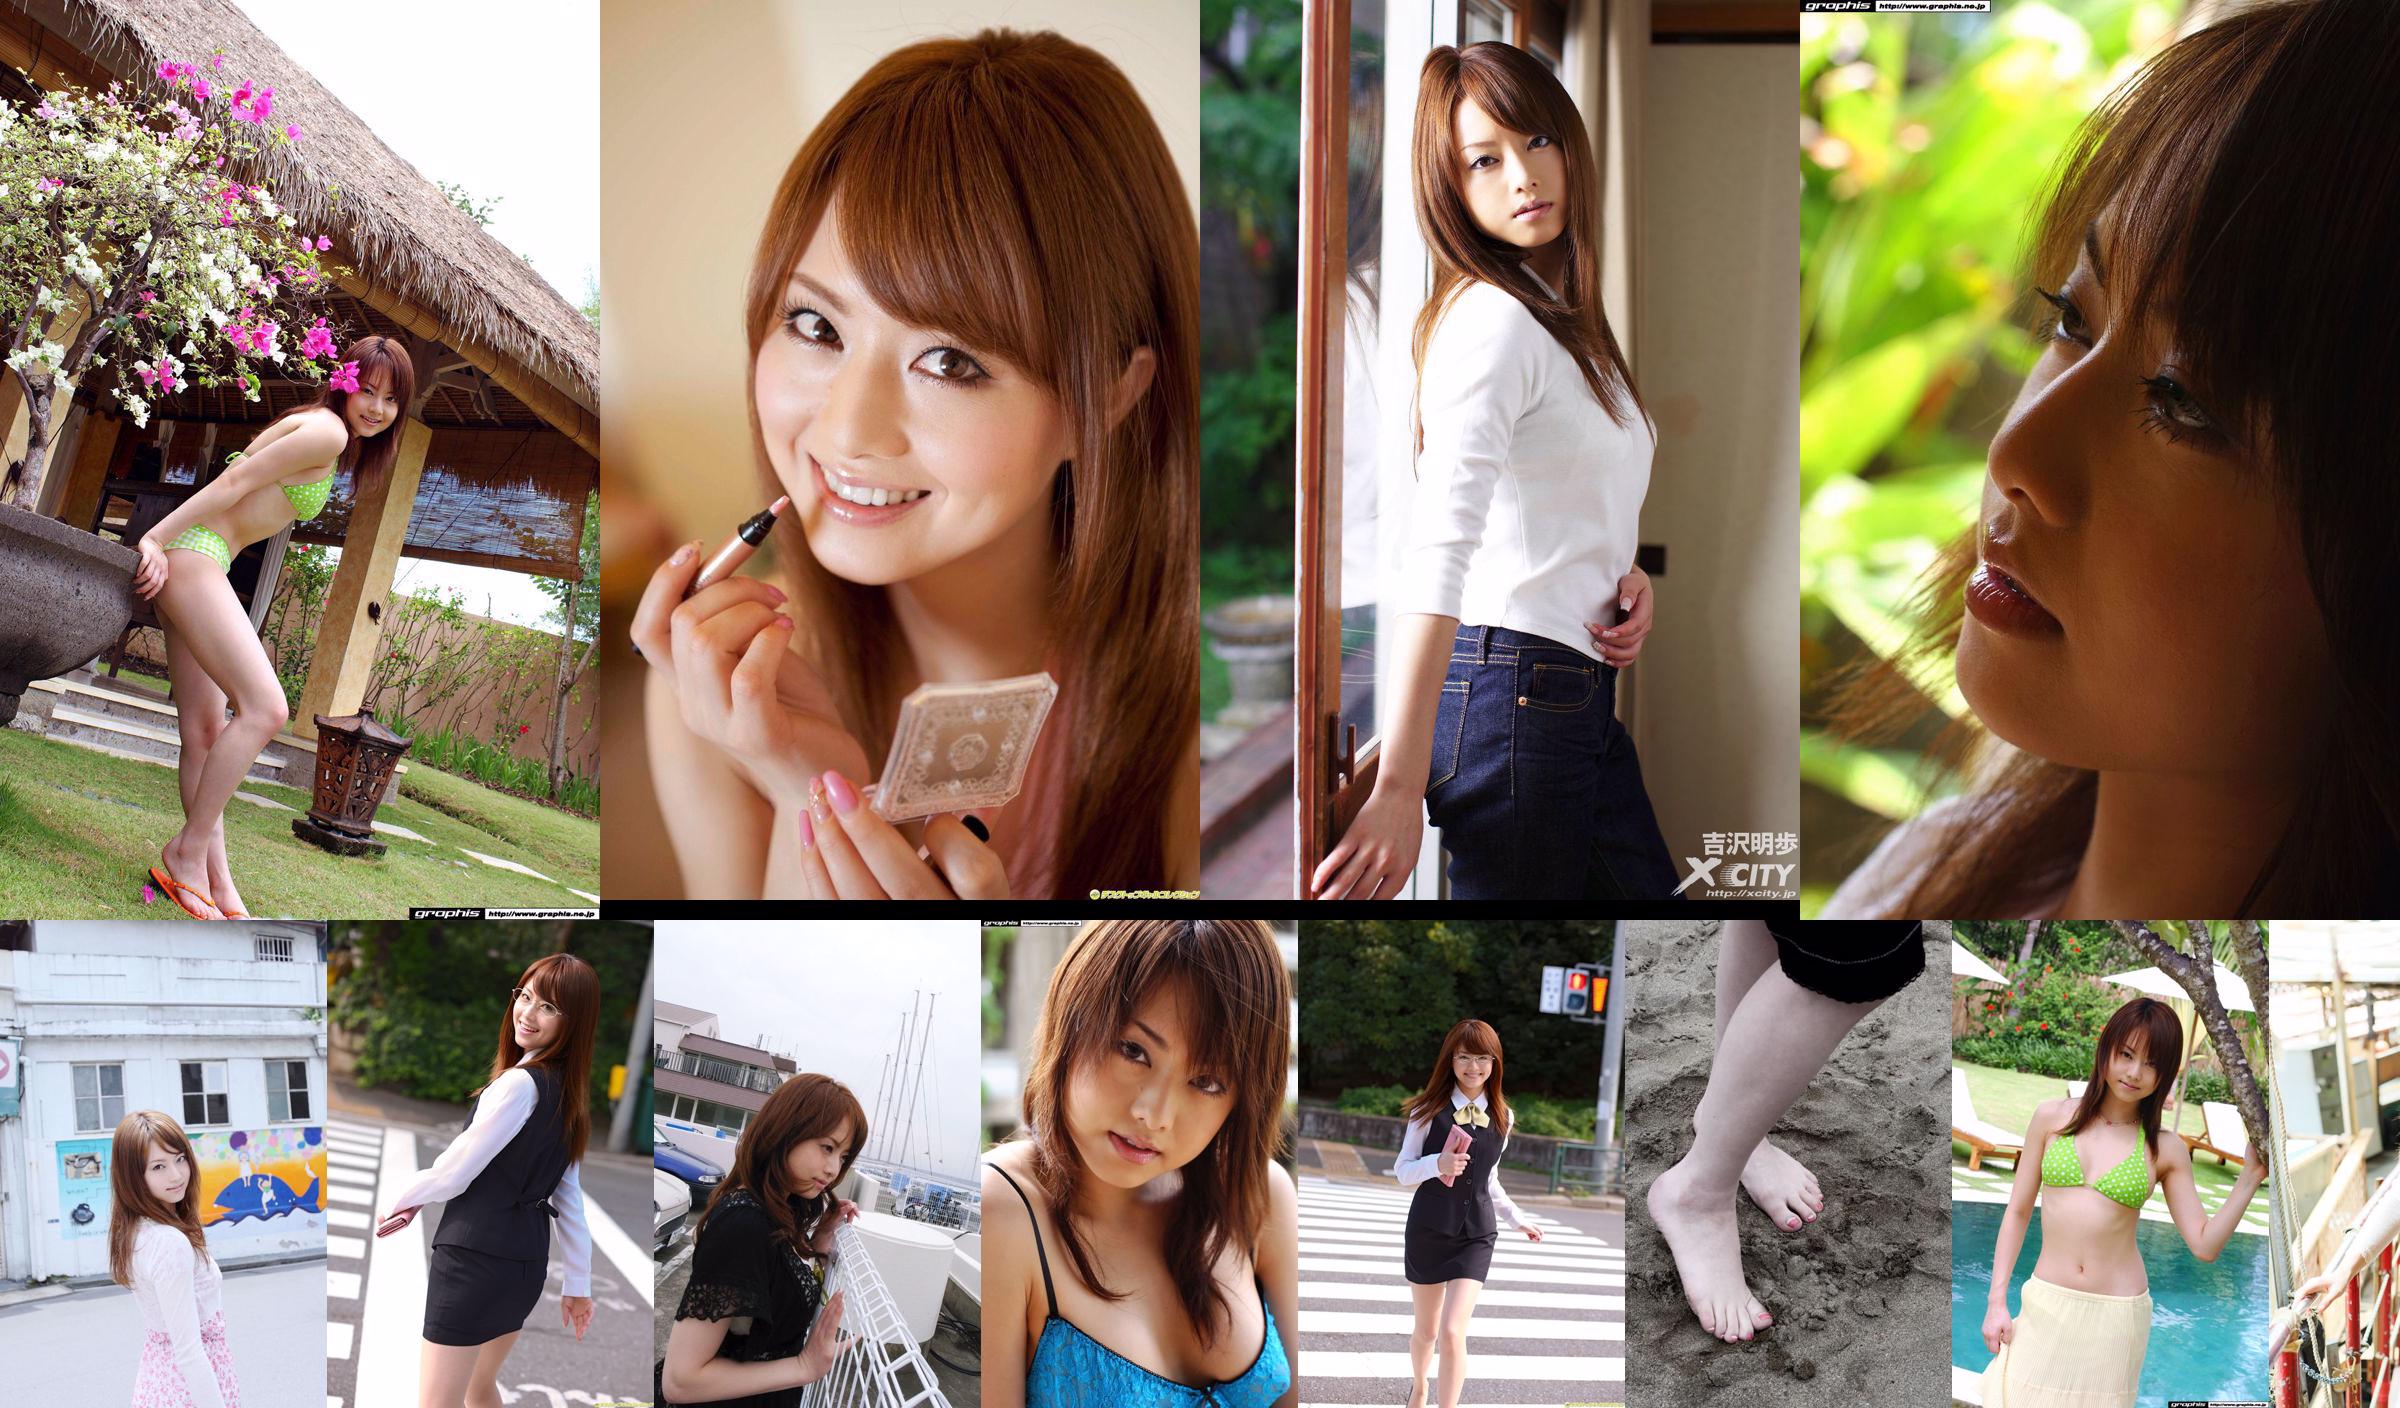 [X-City] WEB Nr. 072 Akiho Yoshizawa "LADY SUPREME" No.2f8496 Seite 2